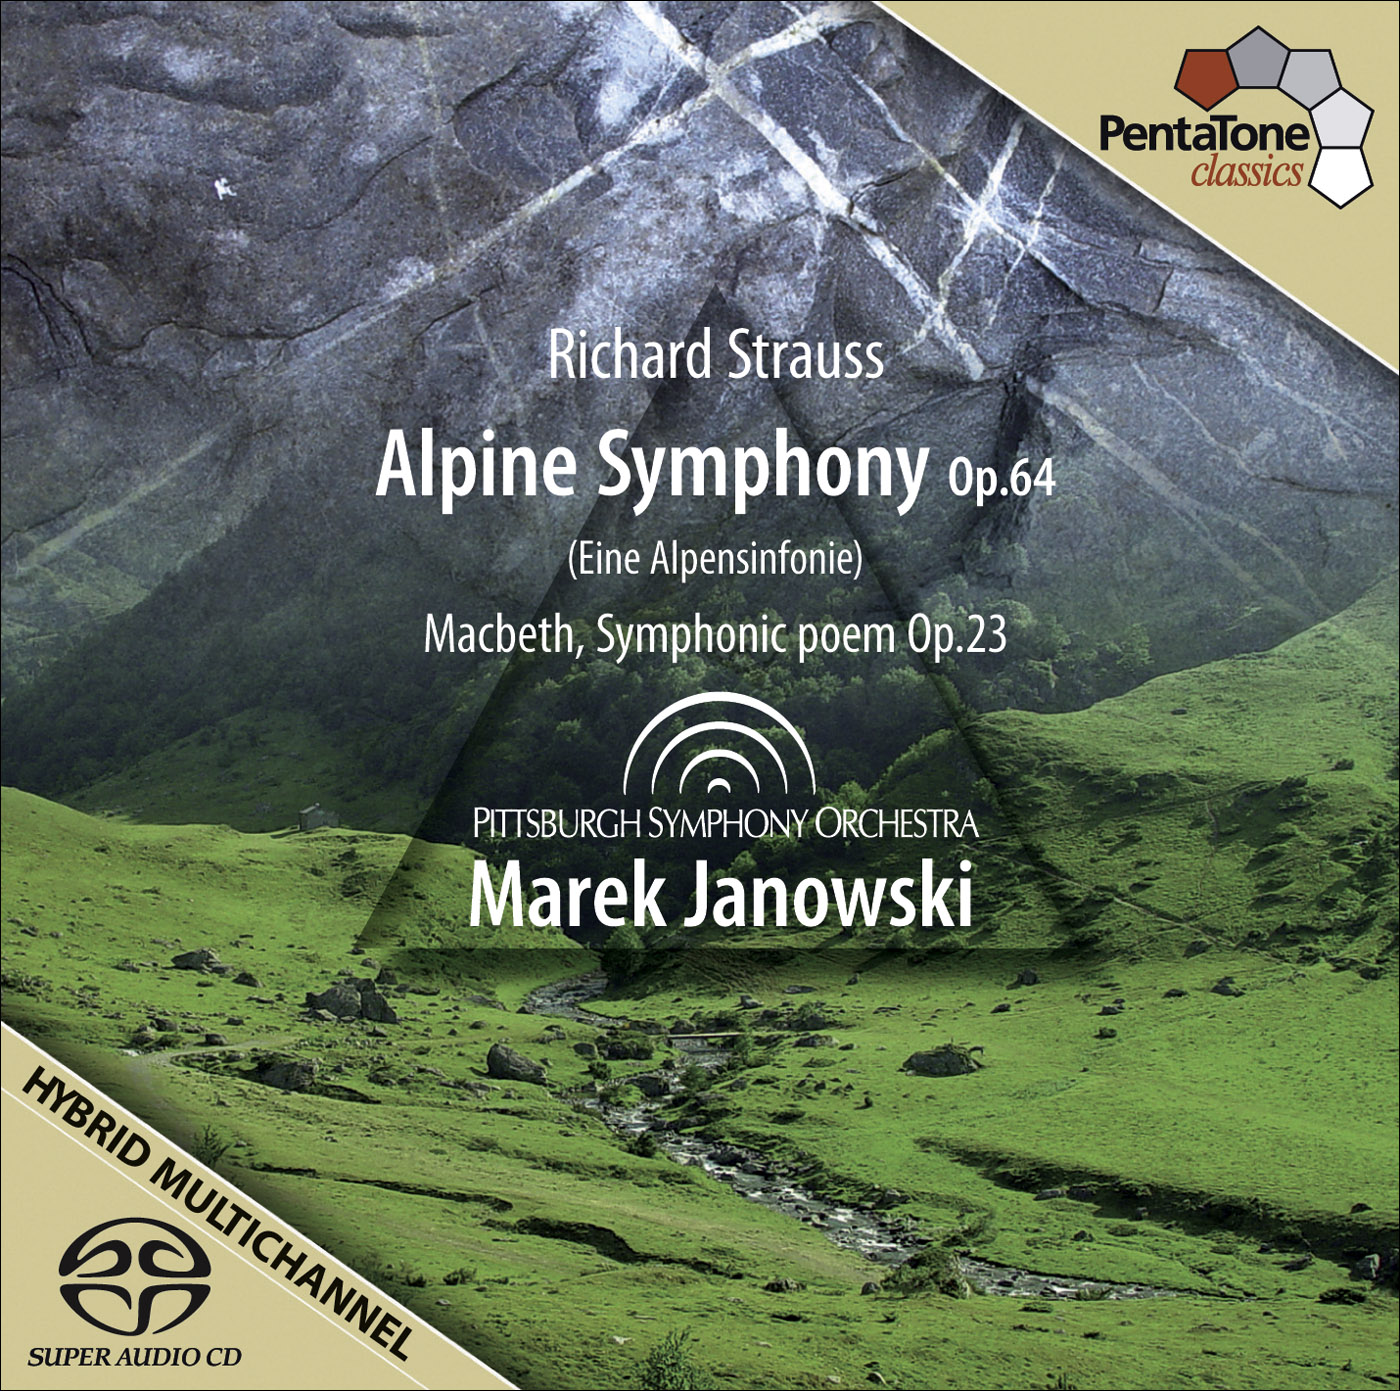 Marek Janowski – Richard Strauss: Alpine Symphony & Macbeth, Symphonic poem (2009) [FLAC 24bit/96kHz]